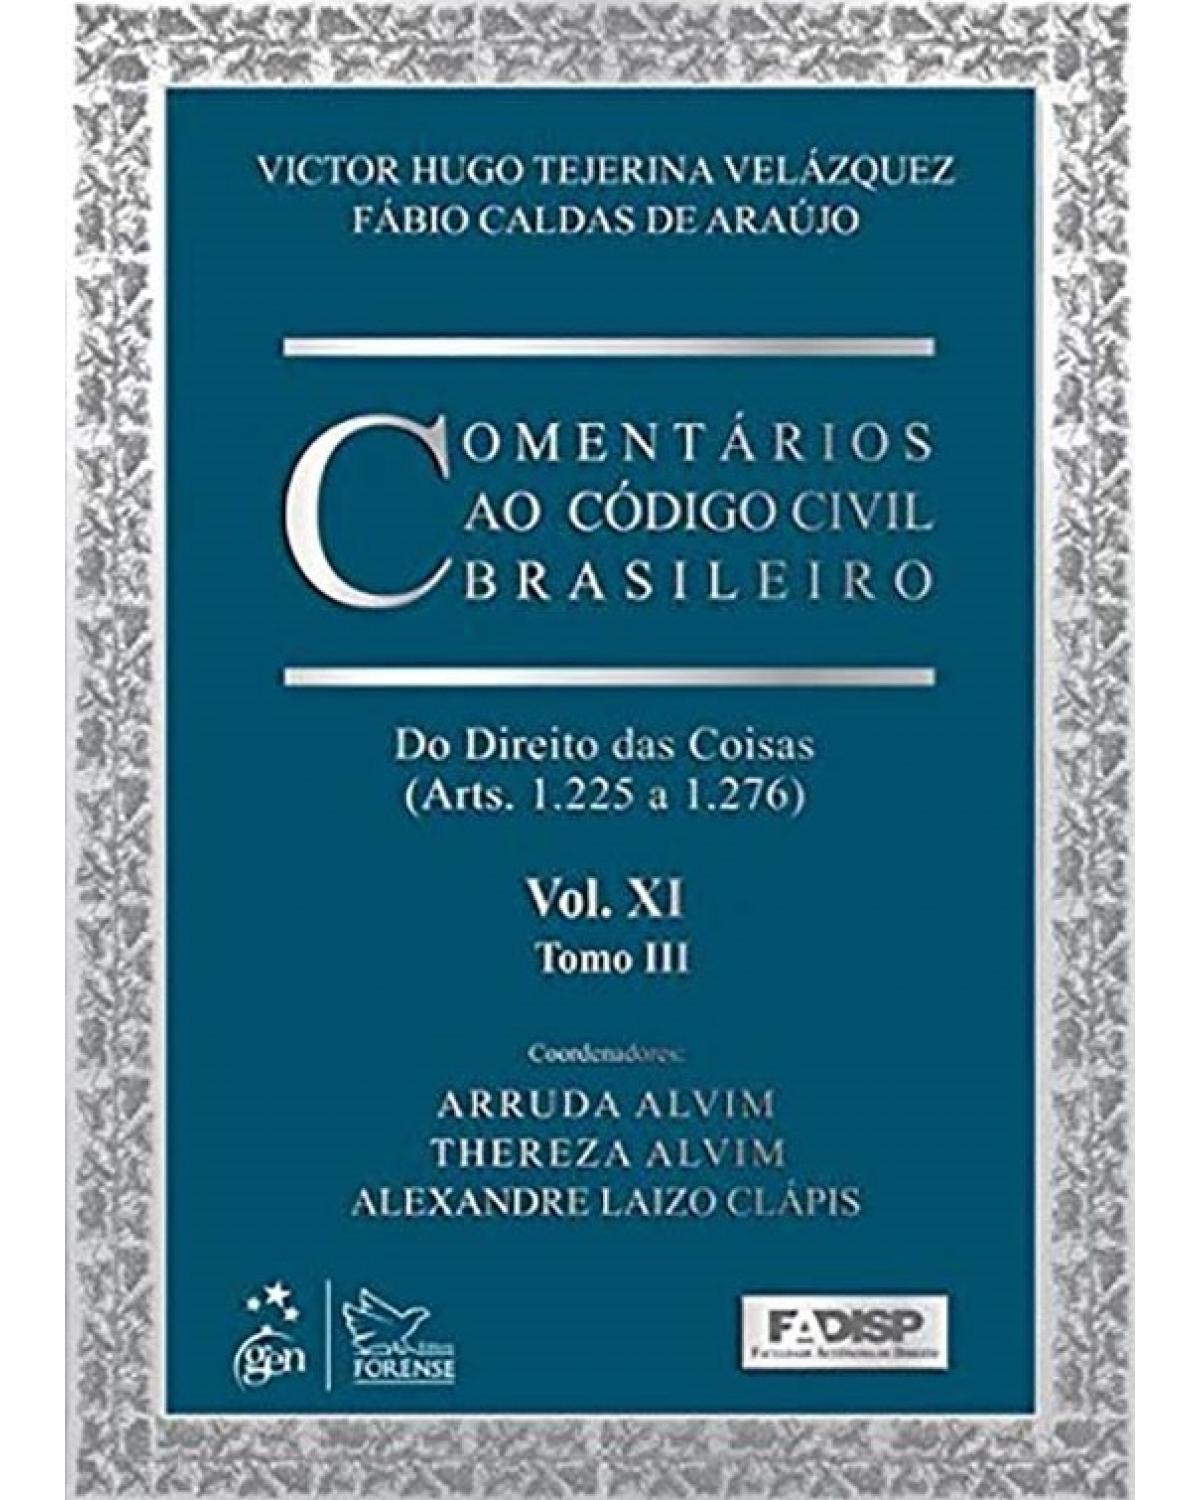 Comentários ao código civil brasileiro - Volume 11: Do direito das coisas (Arts. 1.225 a 1.276) - Tomo III - 1ª Edição | 2013